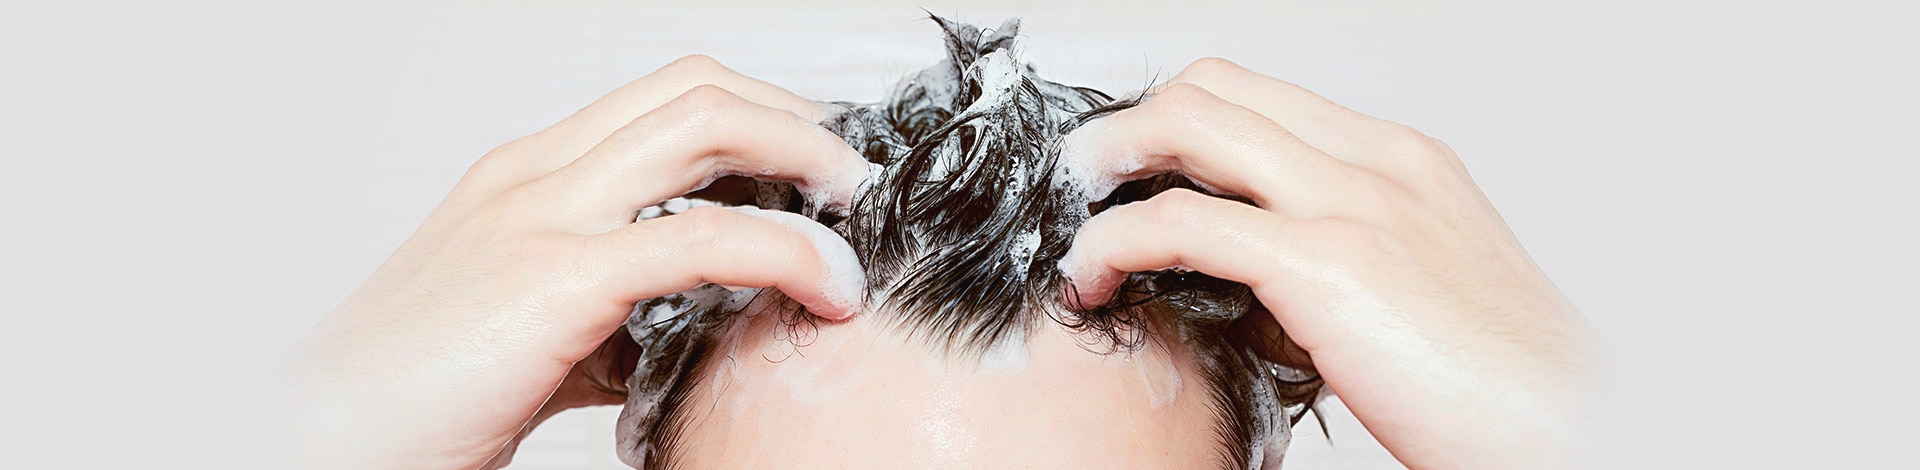 Homem massageando o couro cabeludo no banho